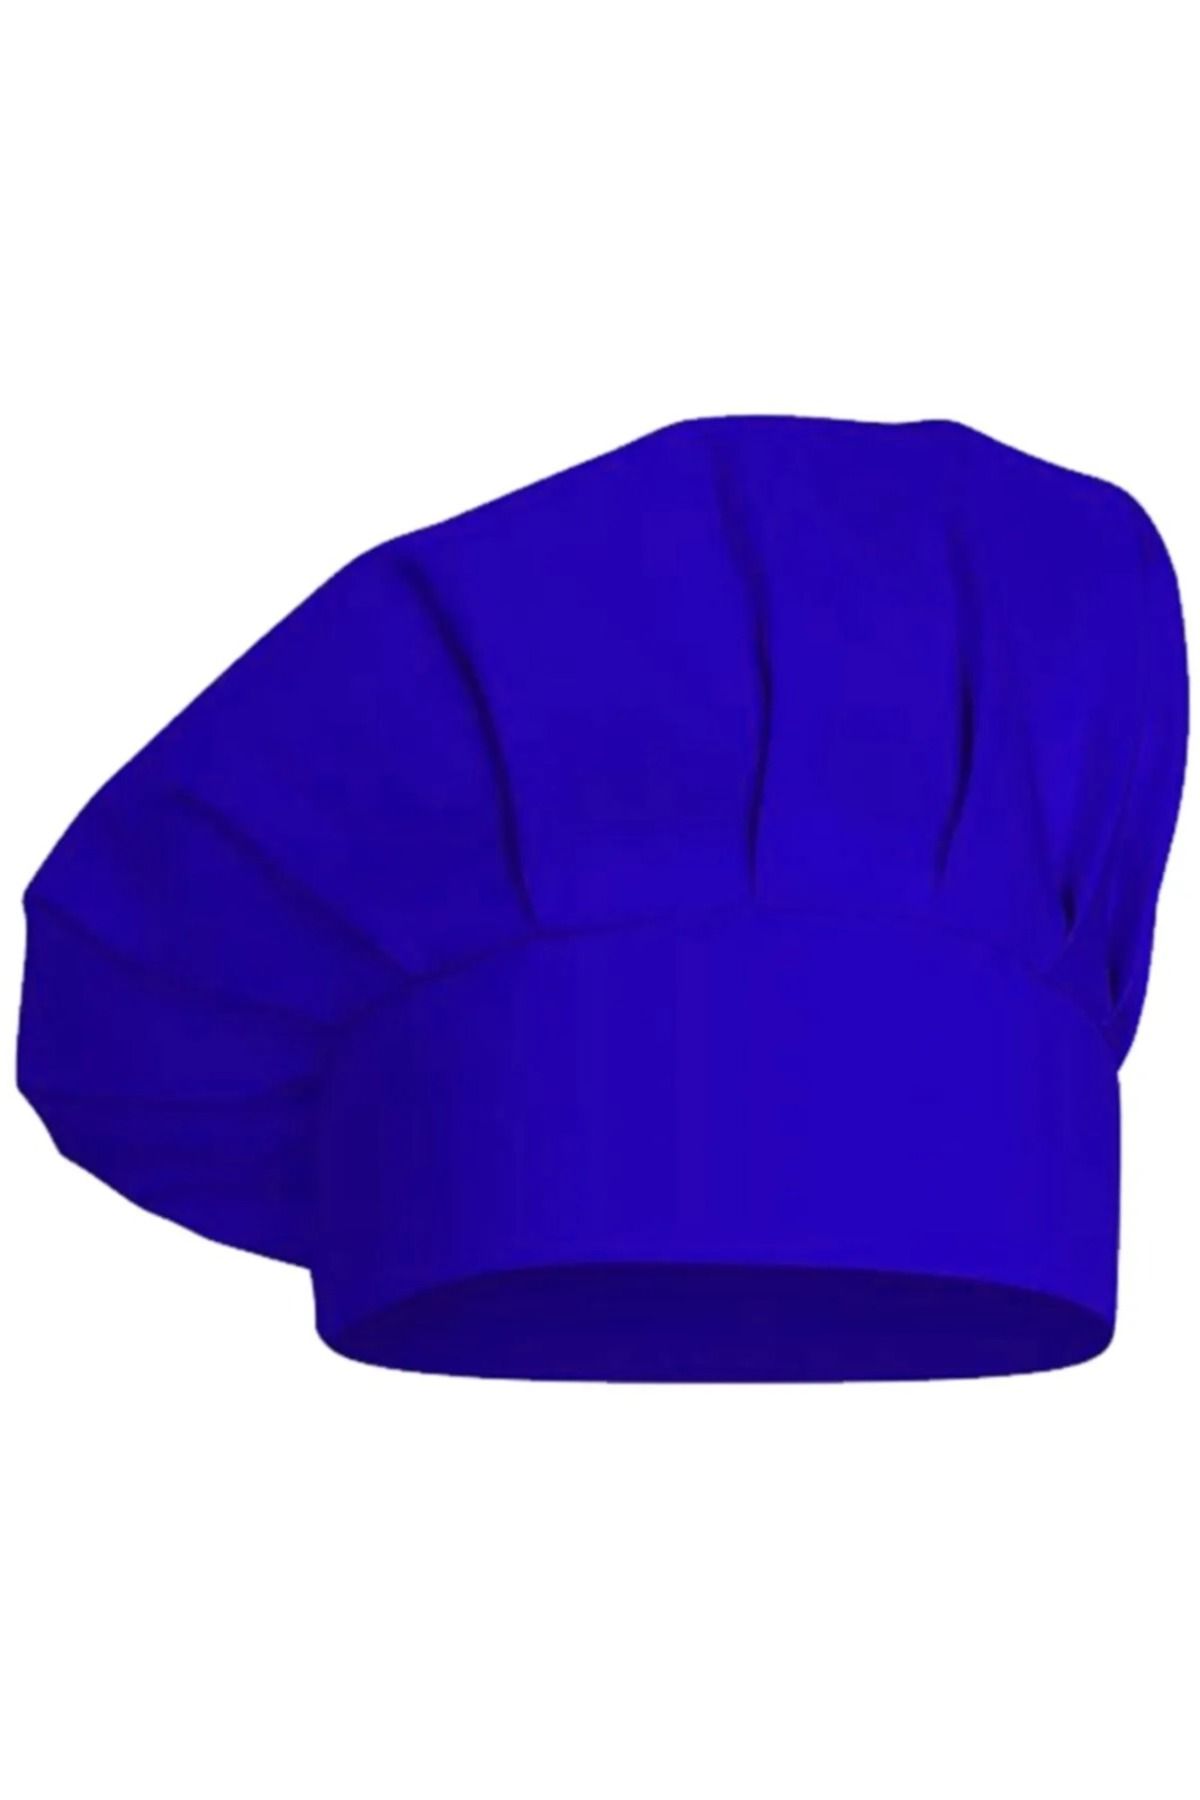 İsra Aşçı Şapkası , Aşçı Kepi, Mantar Kep, Mutfak Şapkası